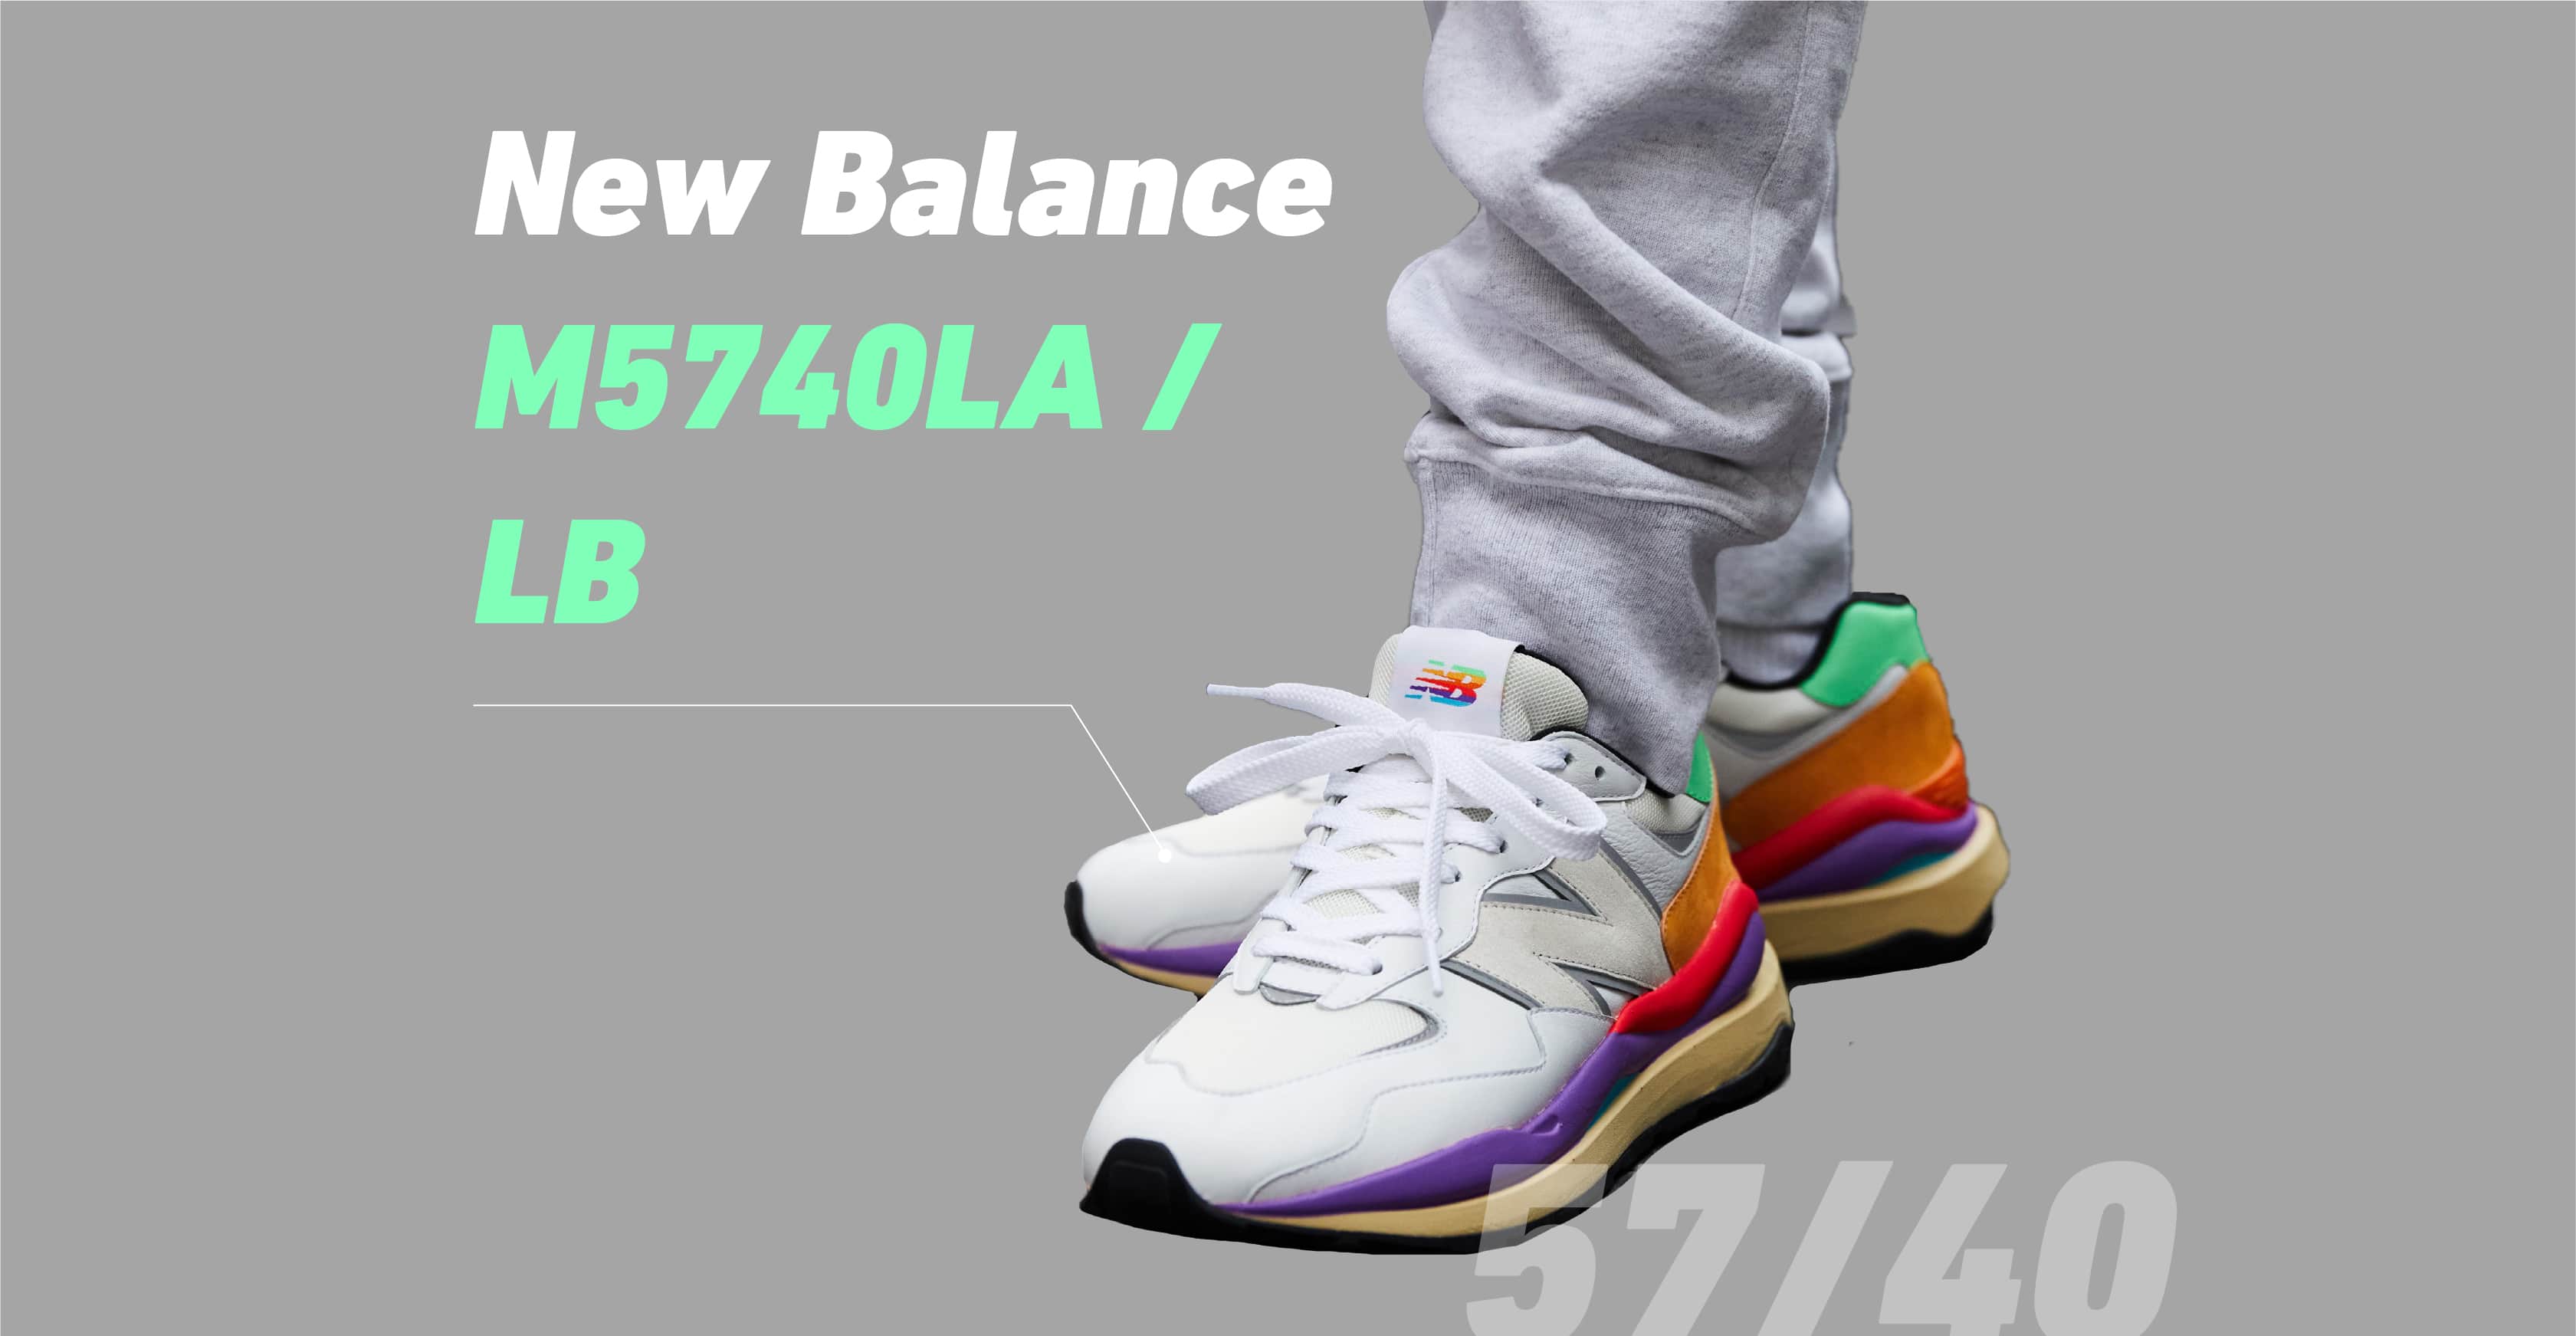 New Balance M5740LA/LB